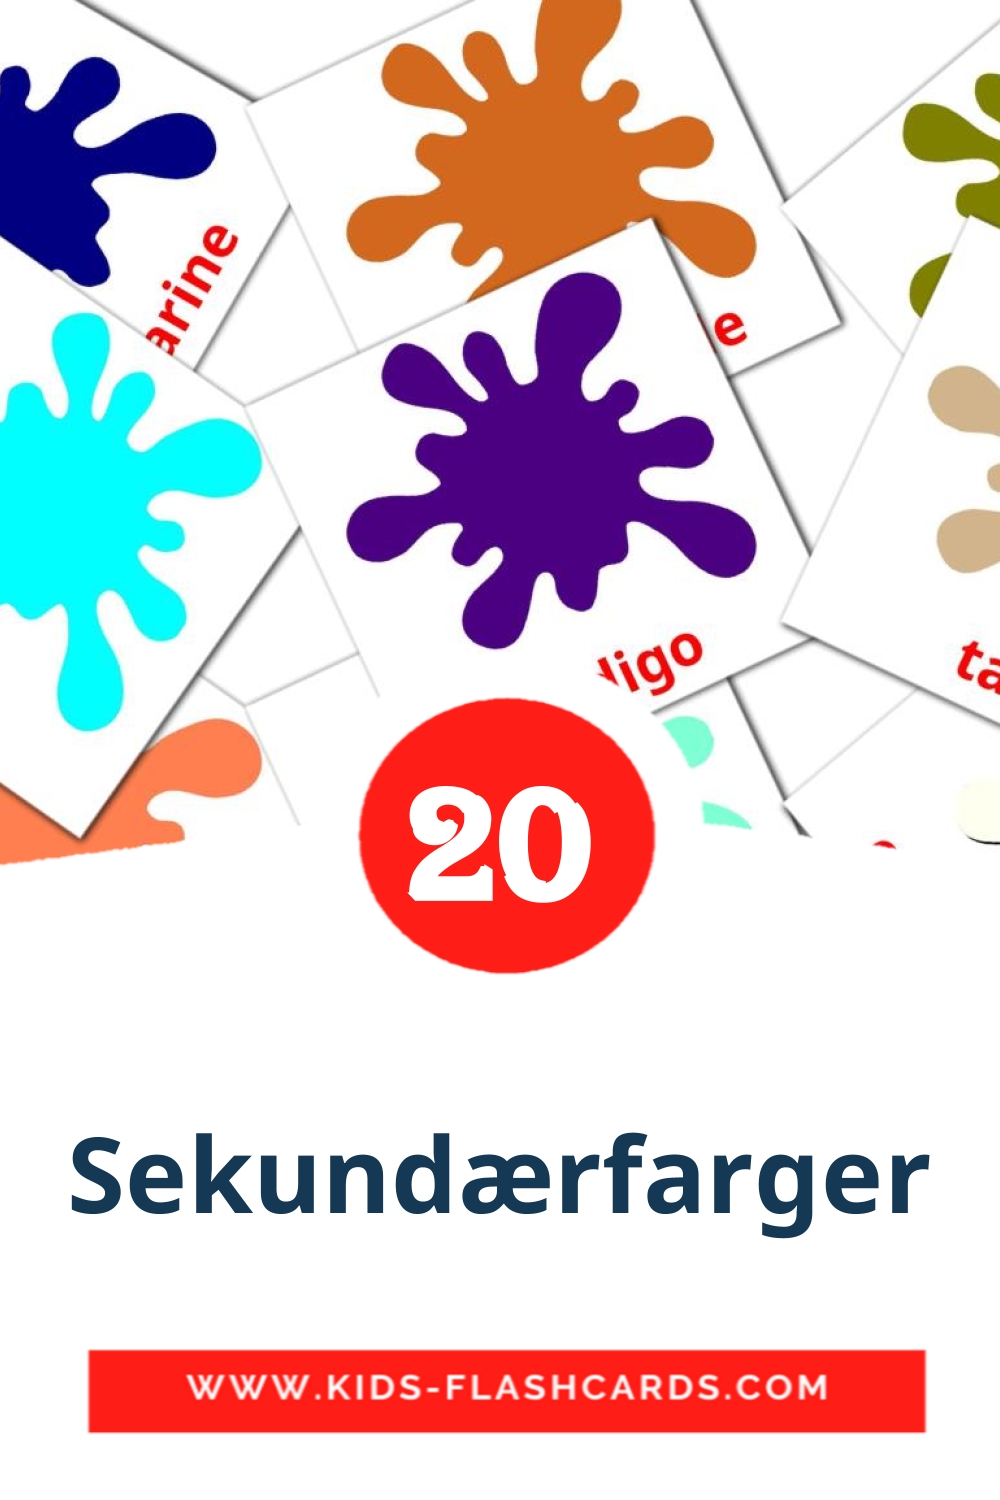 20 Cartões com Imagens de Sekundærfarger para Jardim de Infância em norueguês